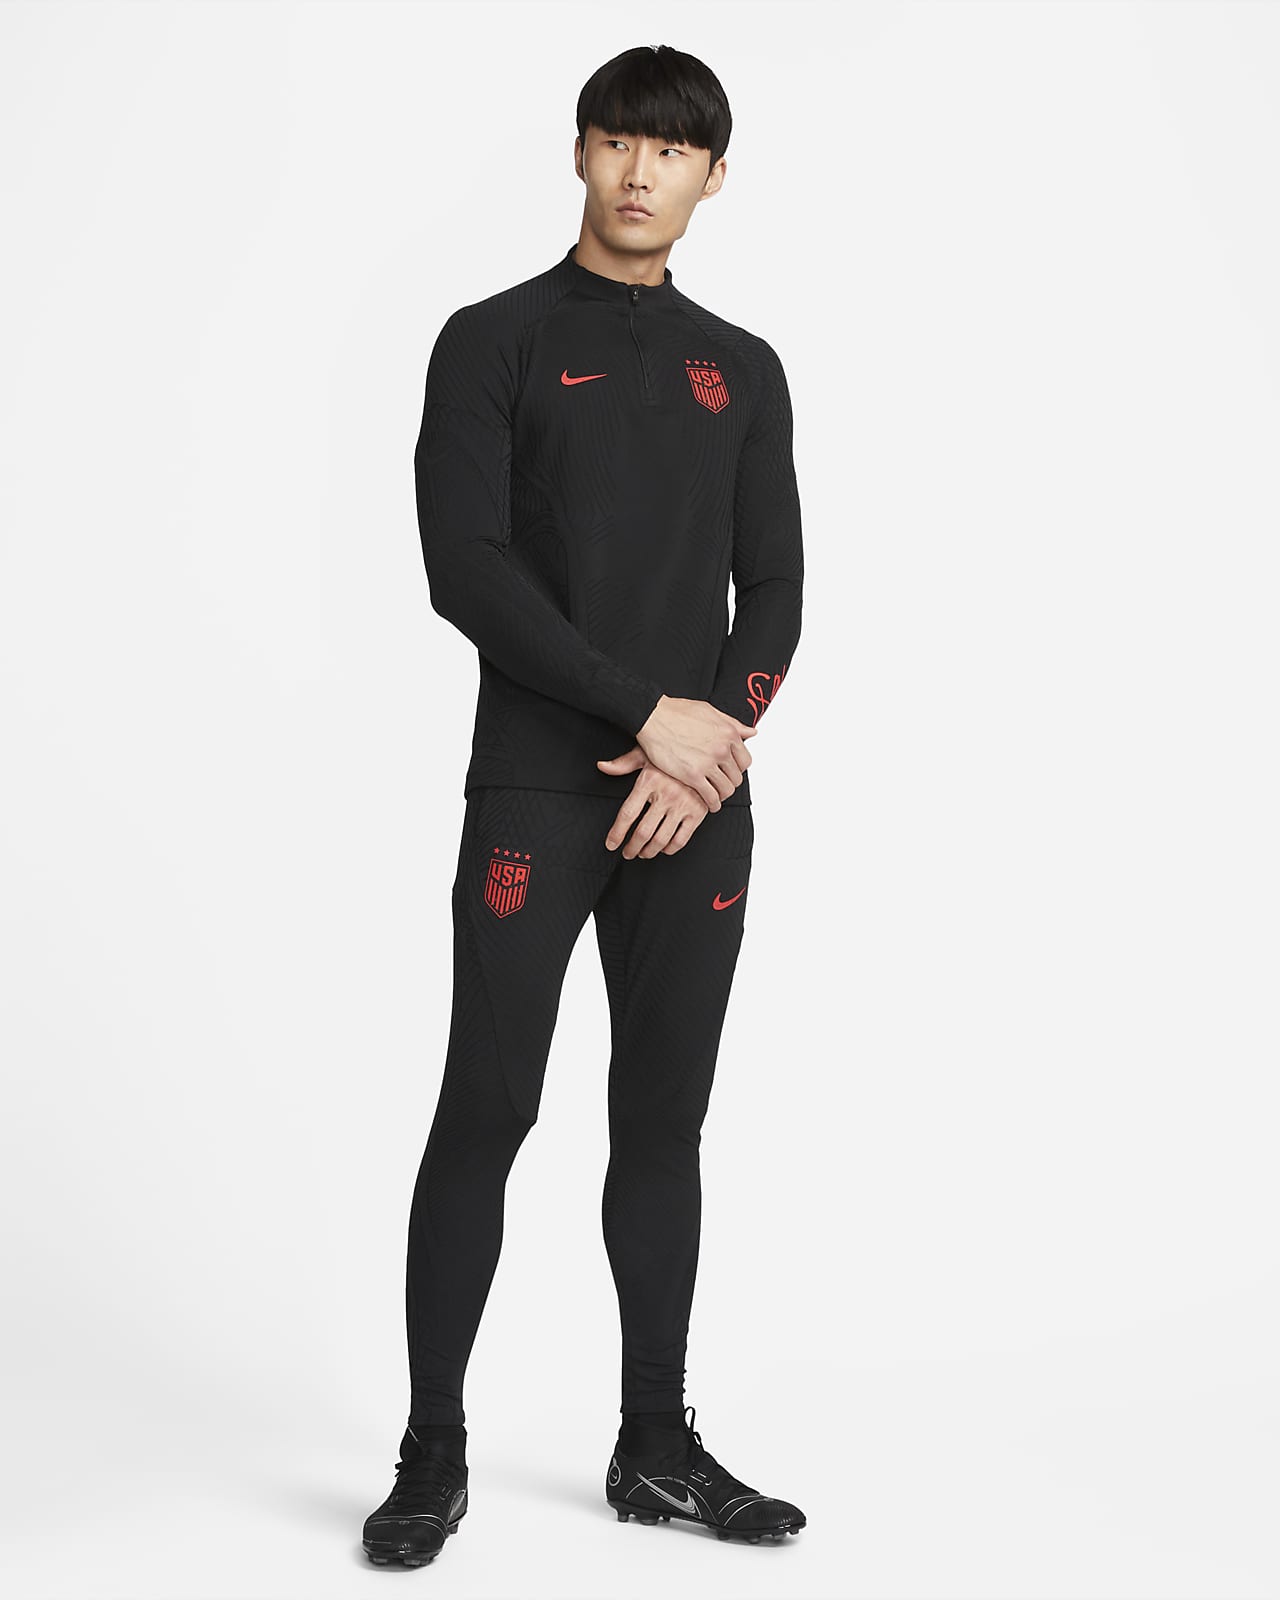 Nike Dri-Fit Strike Soccer Pants Size L Red Crimson Mens Joggers